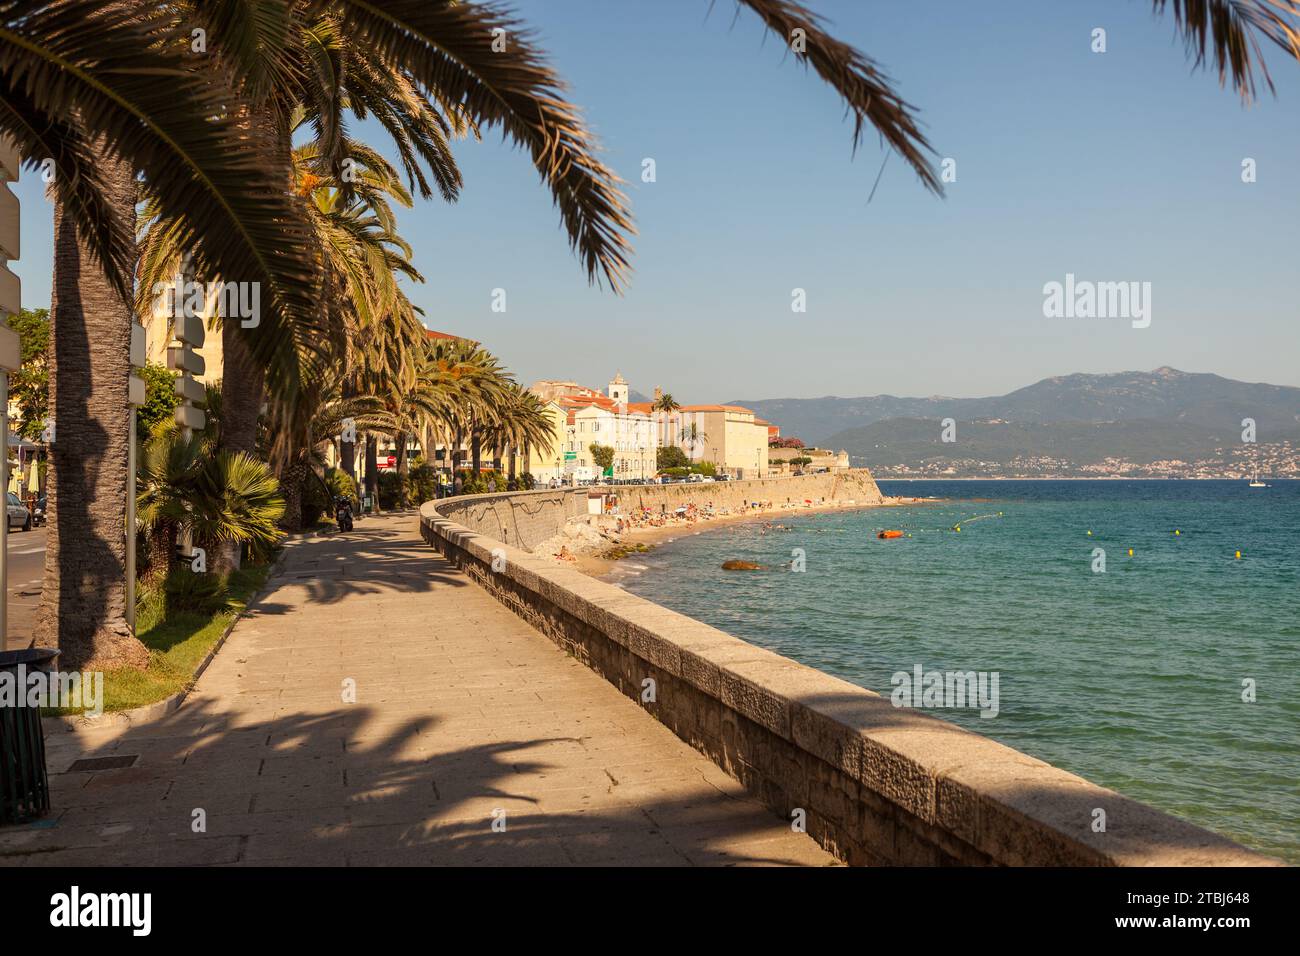 Seaside promenade, Ajaccio, Corsica, France Stock Photo